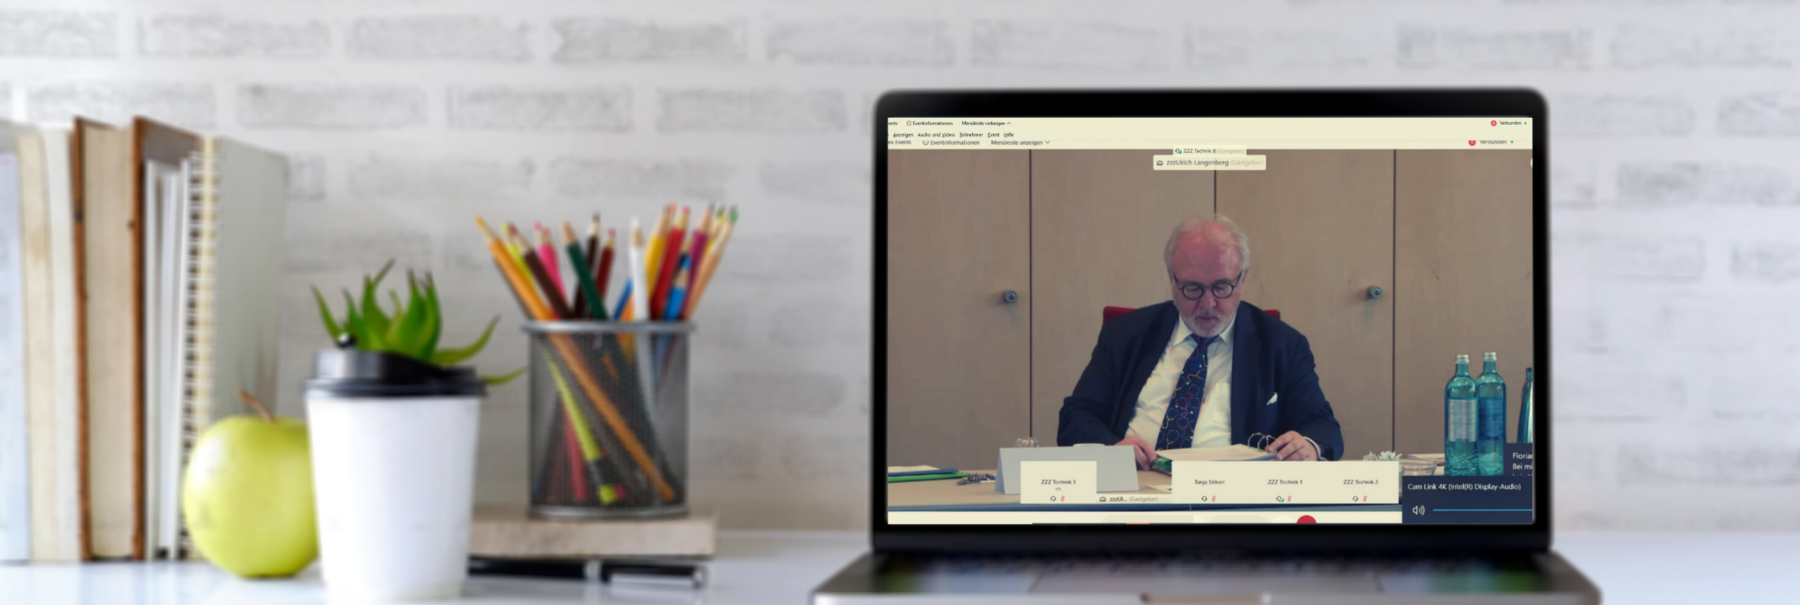 Laptop mit Video der Kammerversammlung (November 2020)